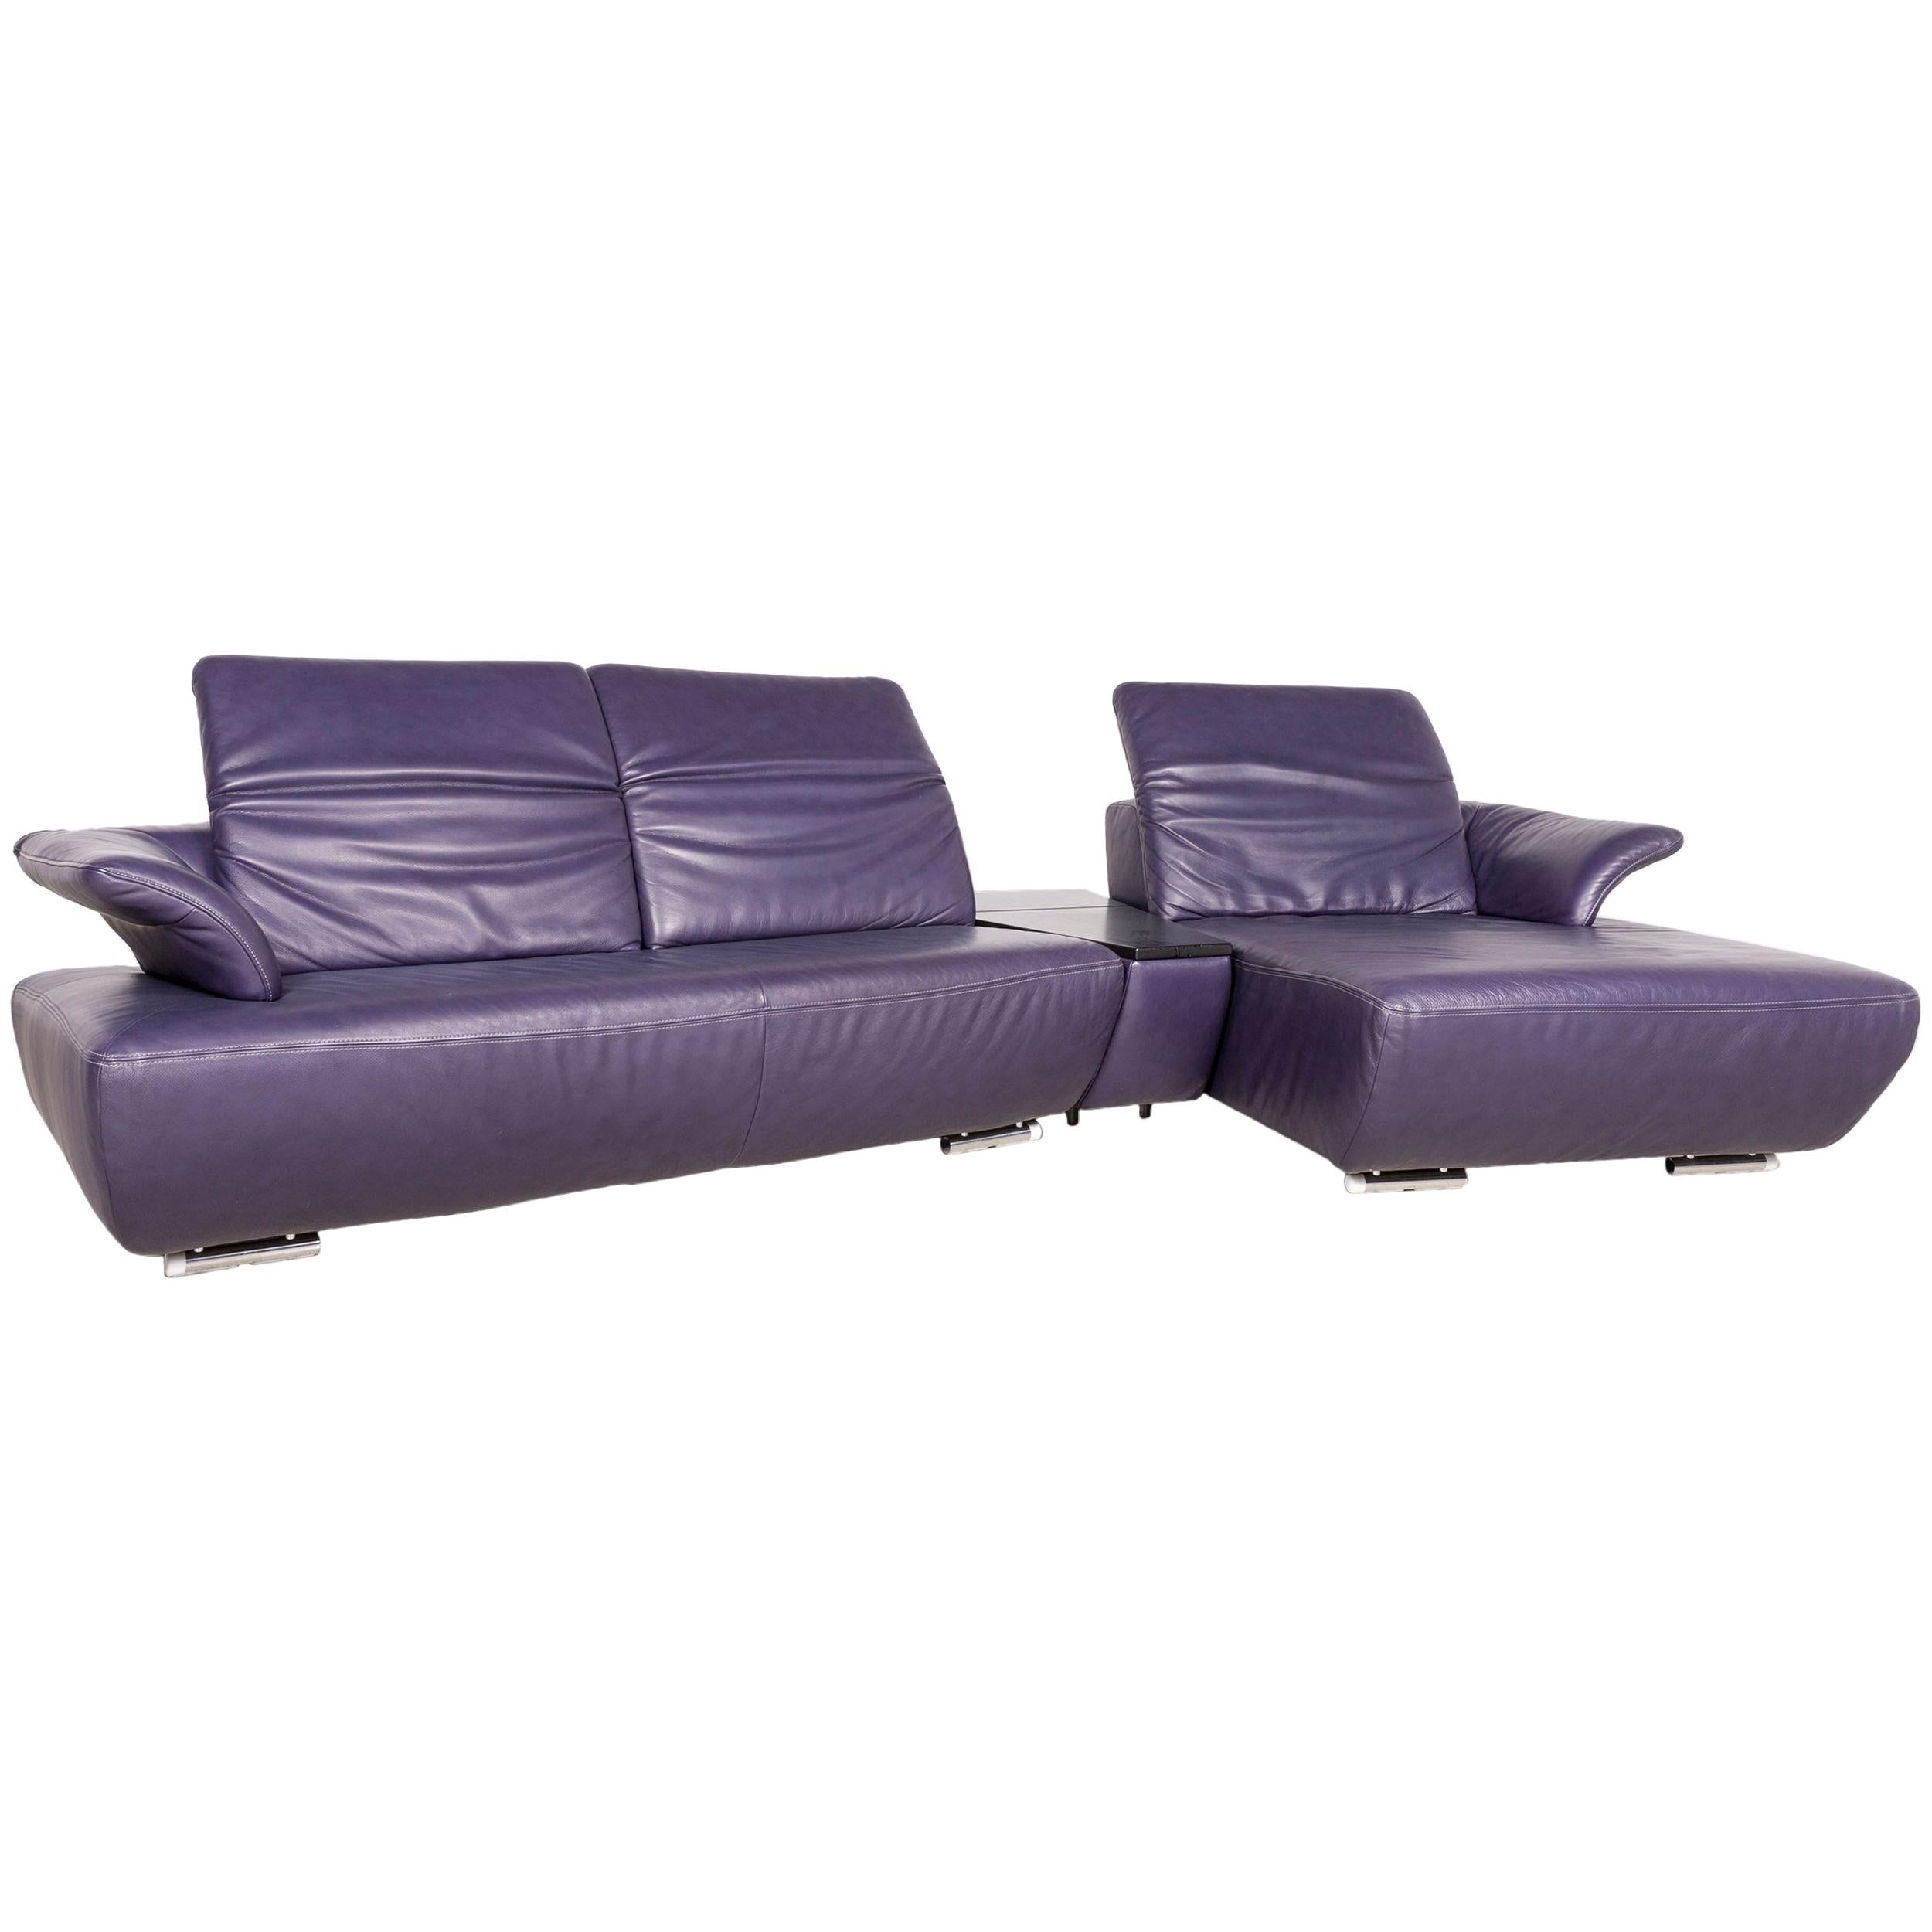 Koinor Avanti Designer Leather Corner Sofa Purple Genuine Leather Sofa Couch For Sale